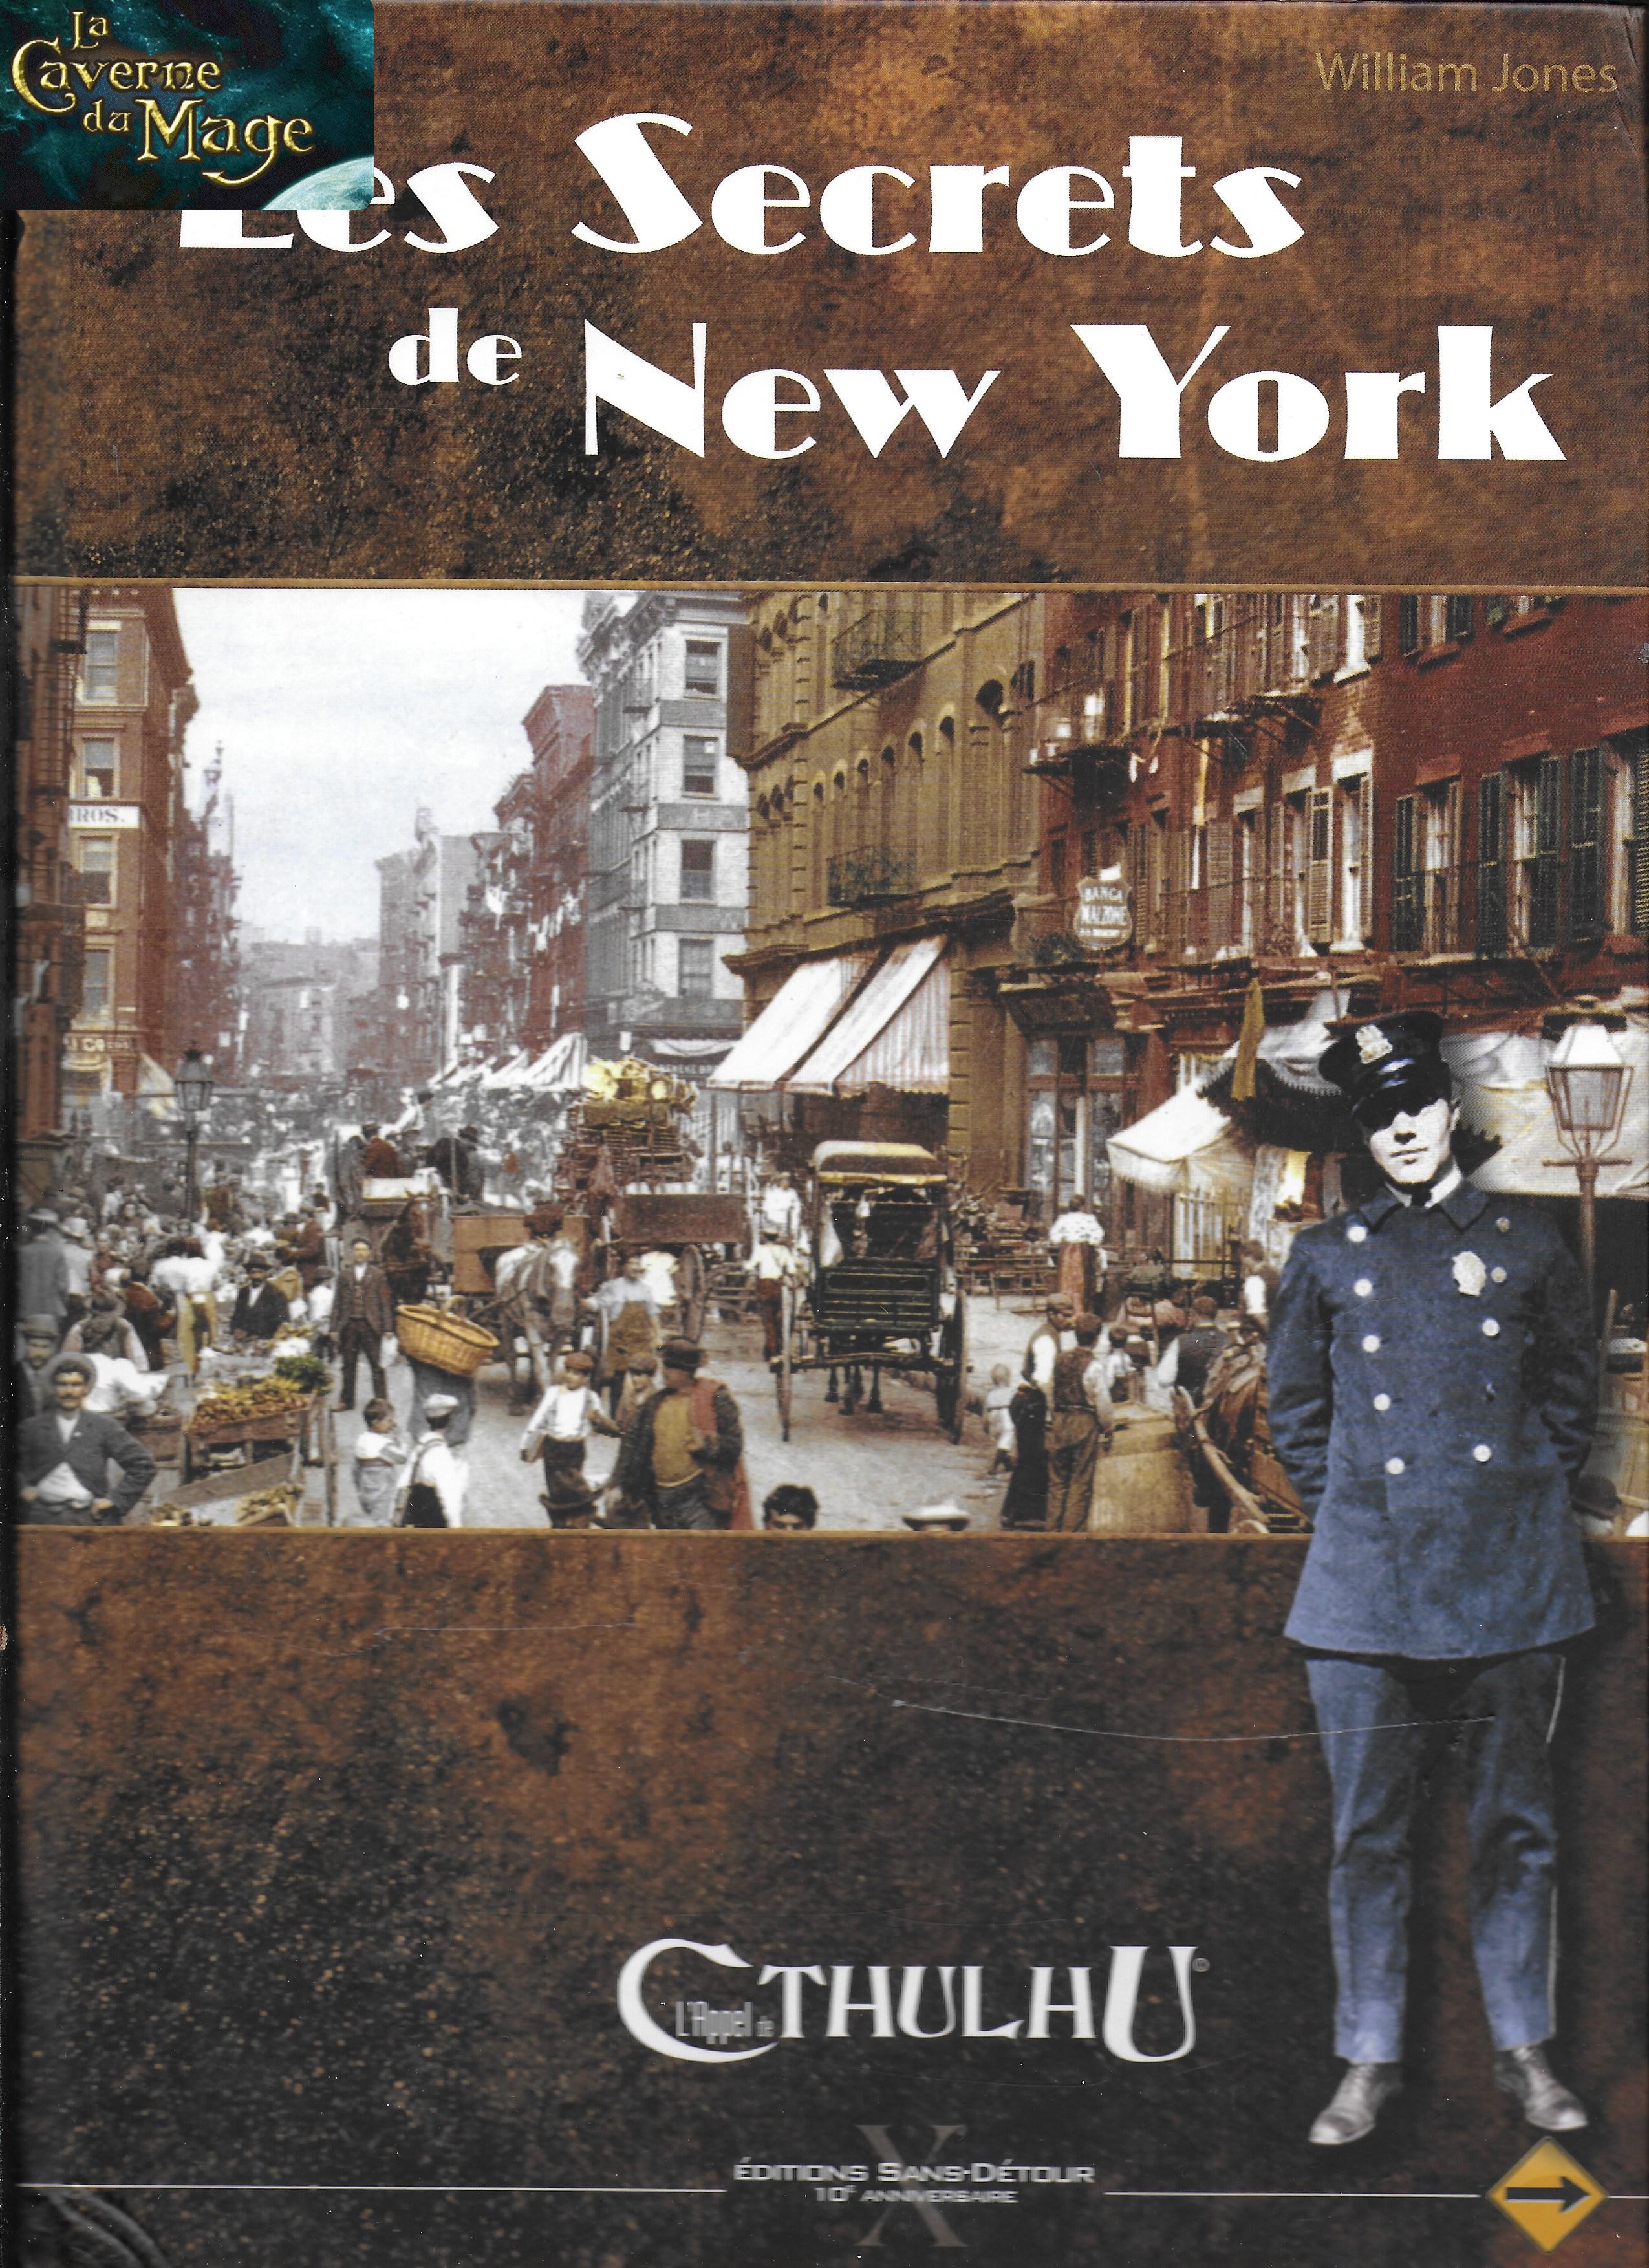 APPEL DE CTHULHU - Les Secrets de New York Ed 10ème Anniversaire